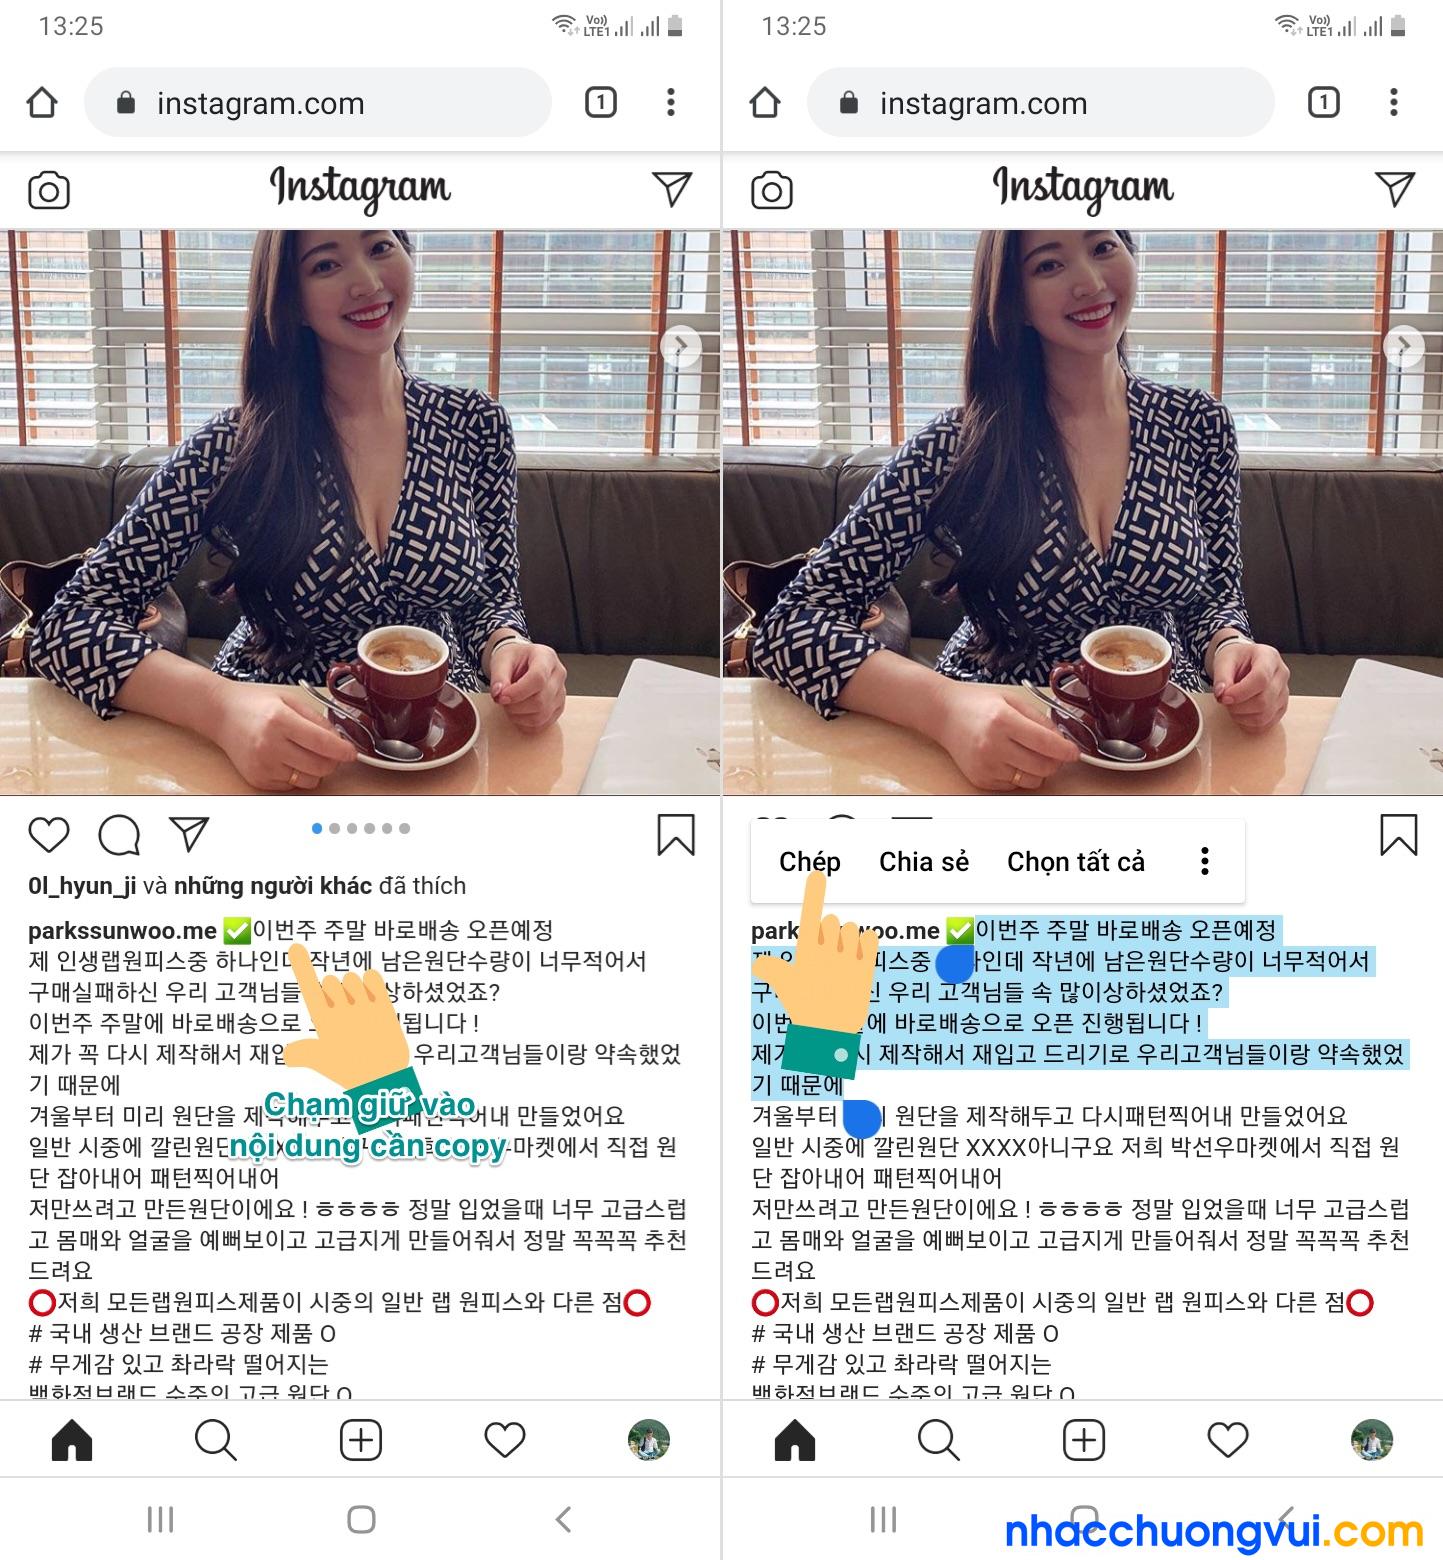 Cách copy caption, bình luận, hashtag... trên instagram bằng điện thoại